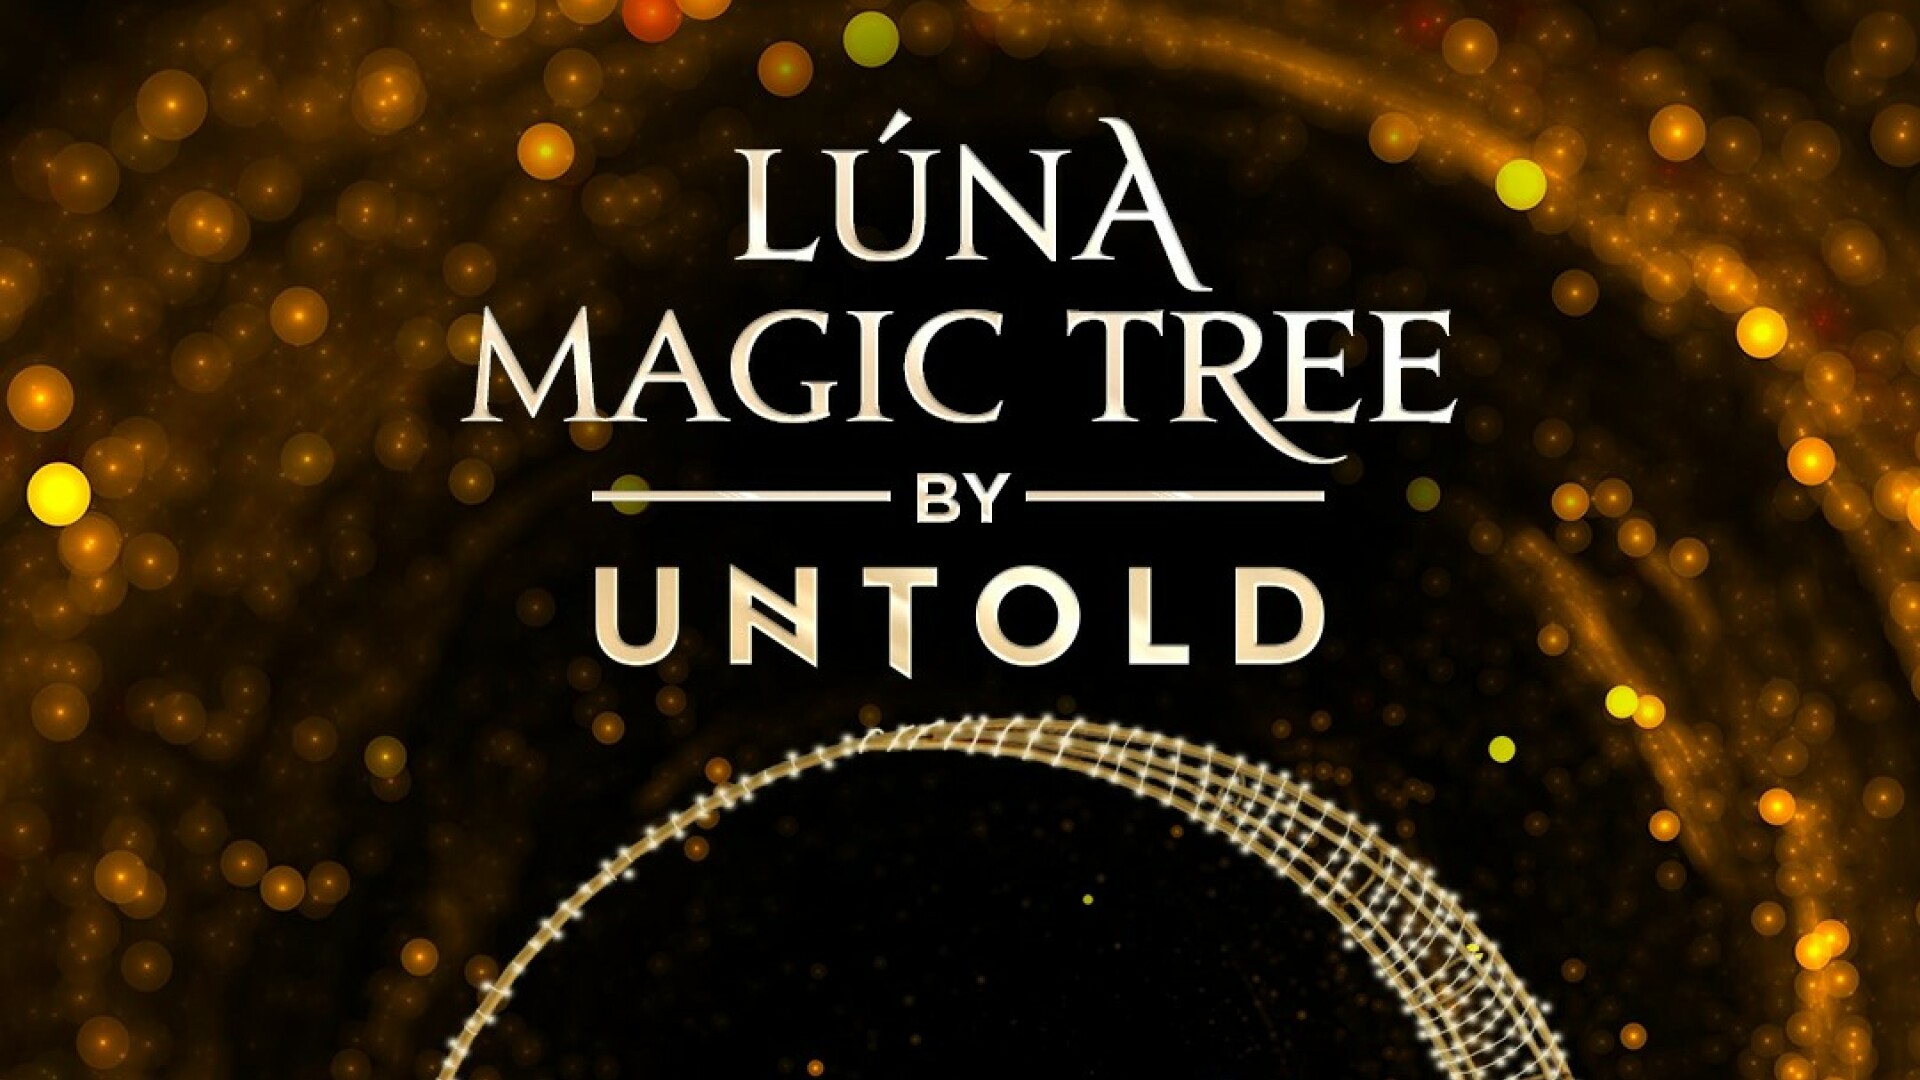 UNTOLD participă cu un brad la Festivalul Brazilor de Crăciun! Luna Magic Tree by UNTOLD